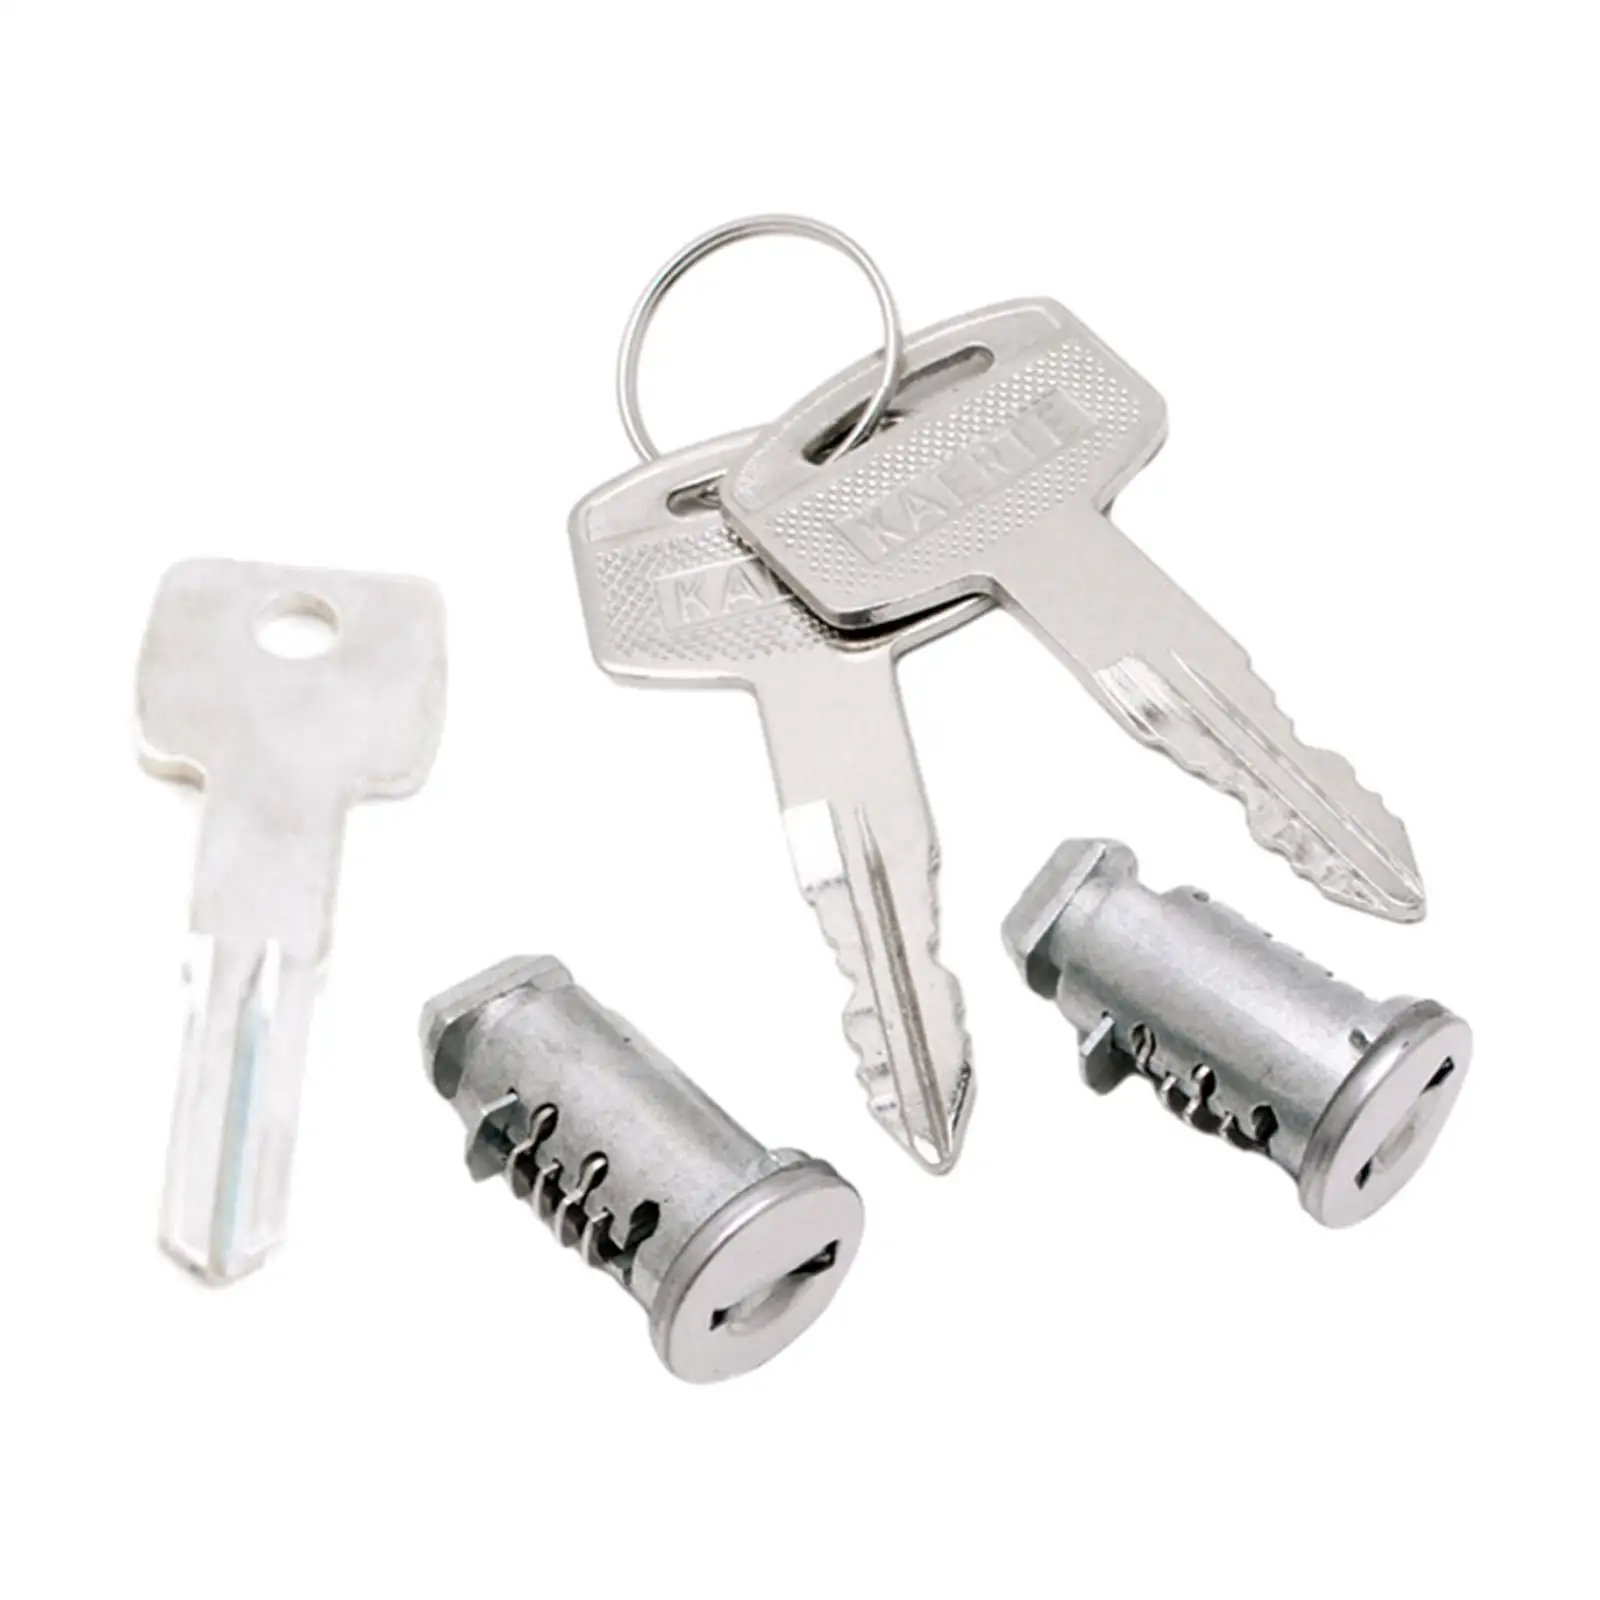 2x Lock Cylindes Accessory Locks Keys Roof Rack Locks Professional Cargo Bar Lock with Key for Car Rack Locks SUV